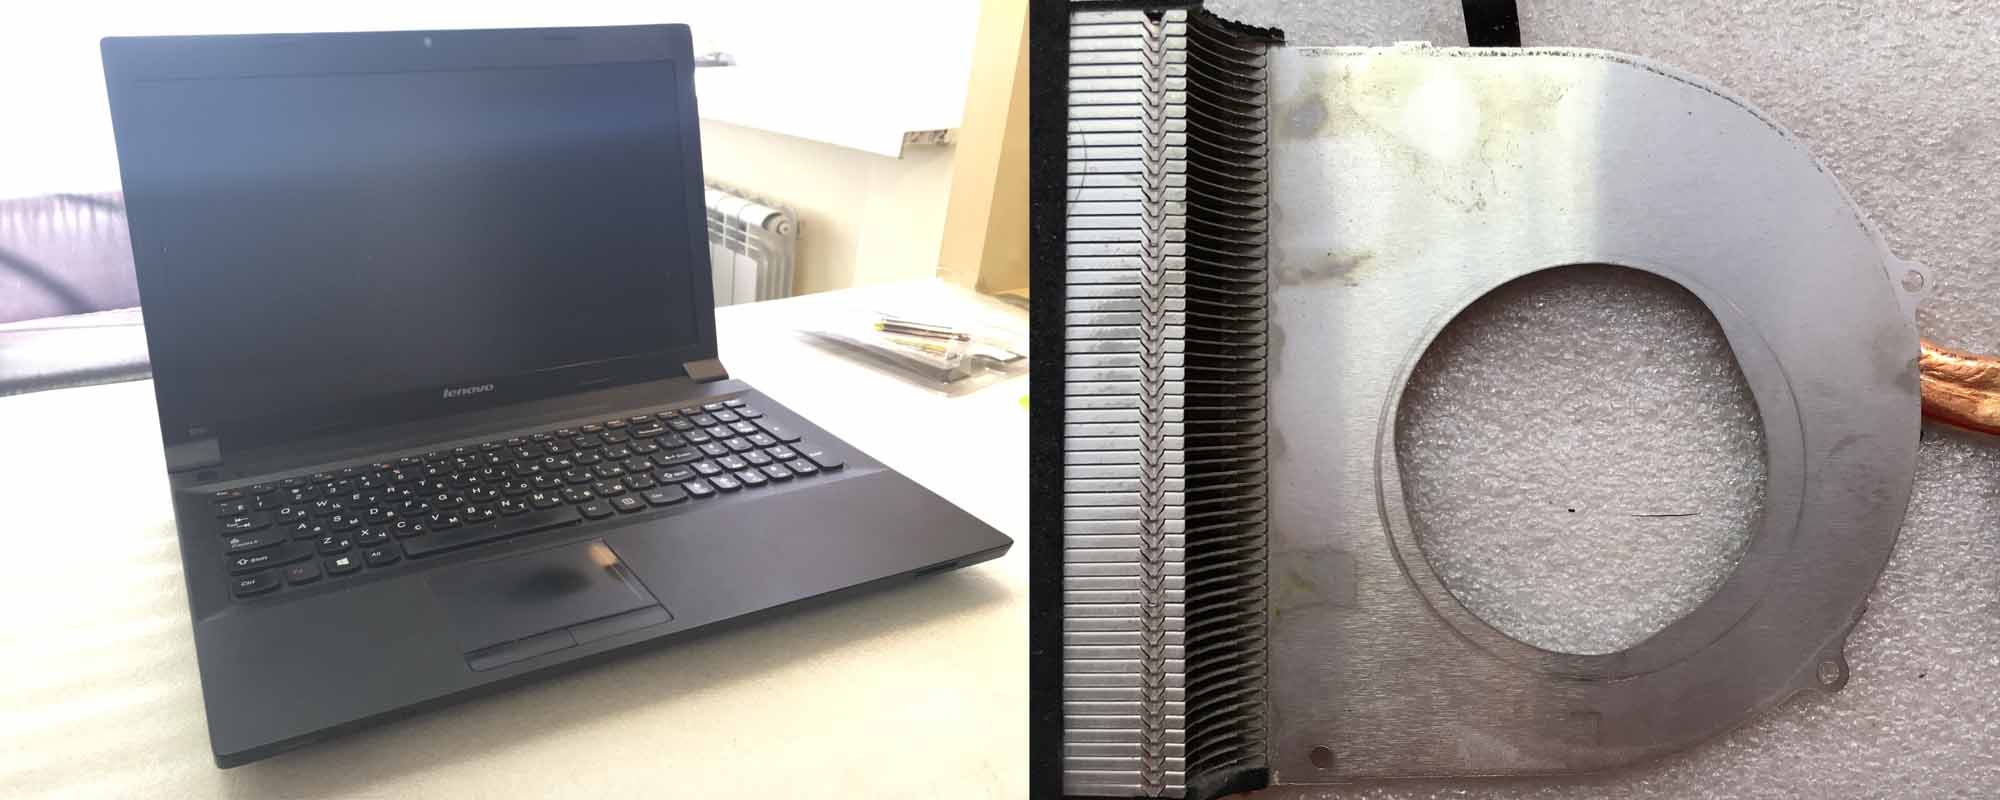 Ремонт вентилятора ноутбука Lenovo B590